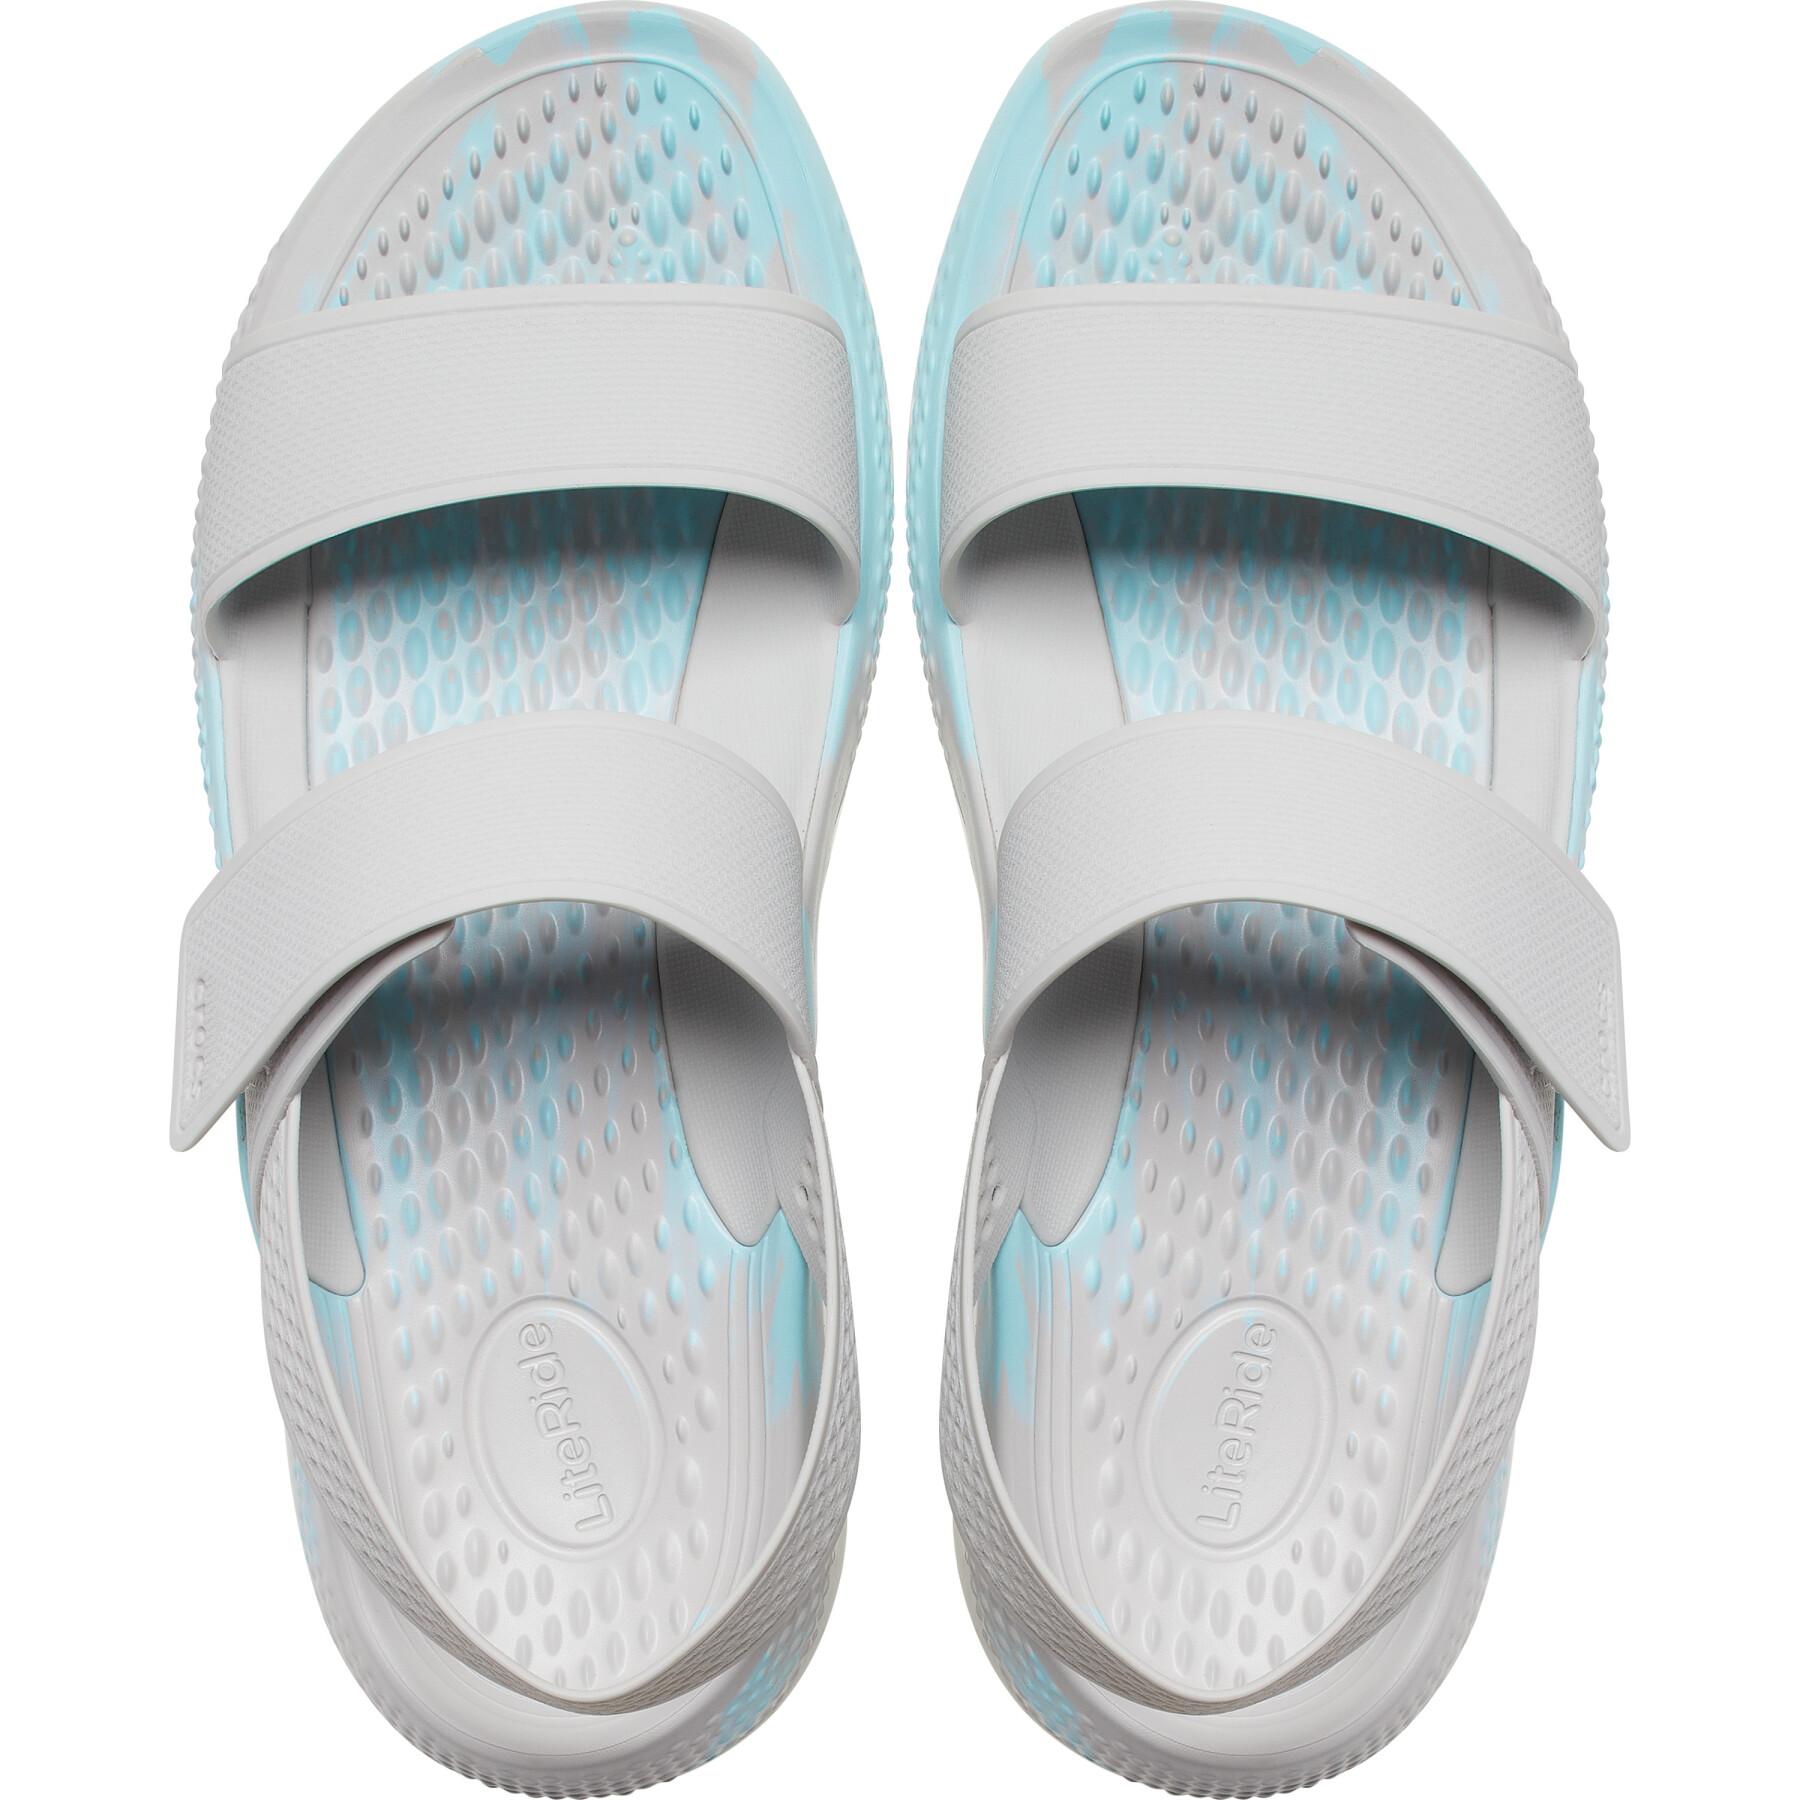 Women's sandals Crocs literide 360 marbled